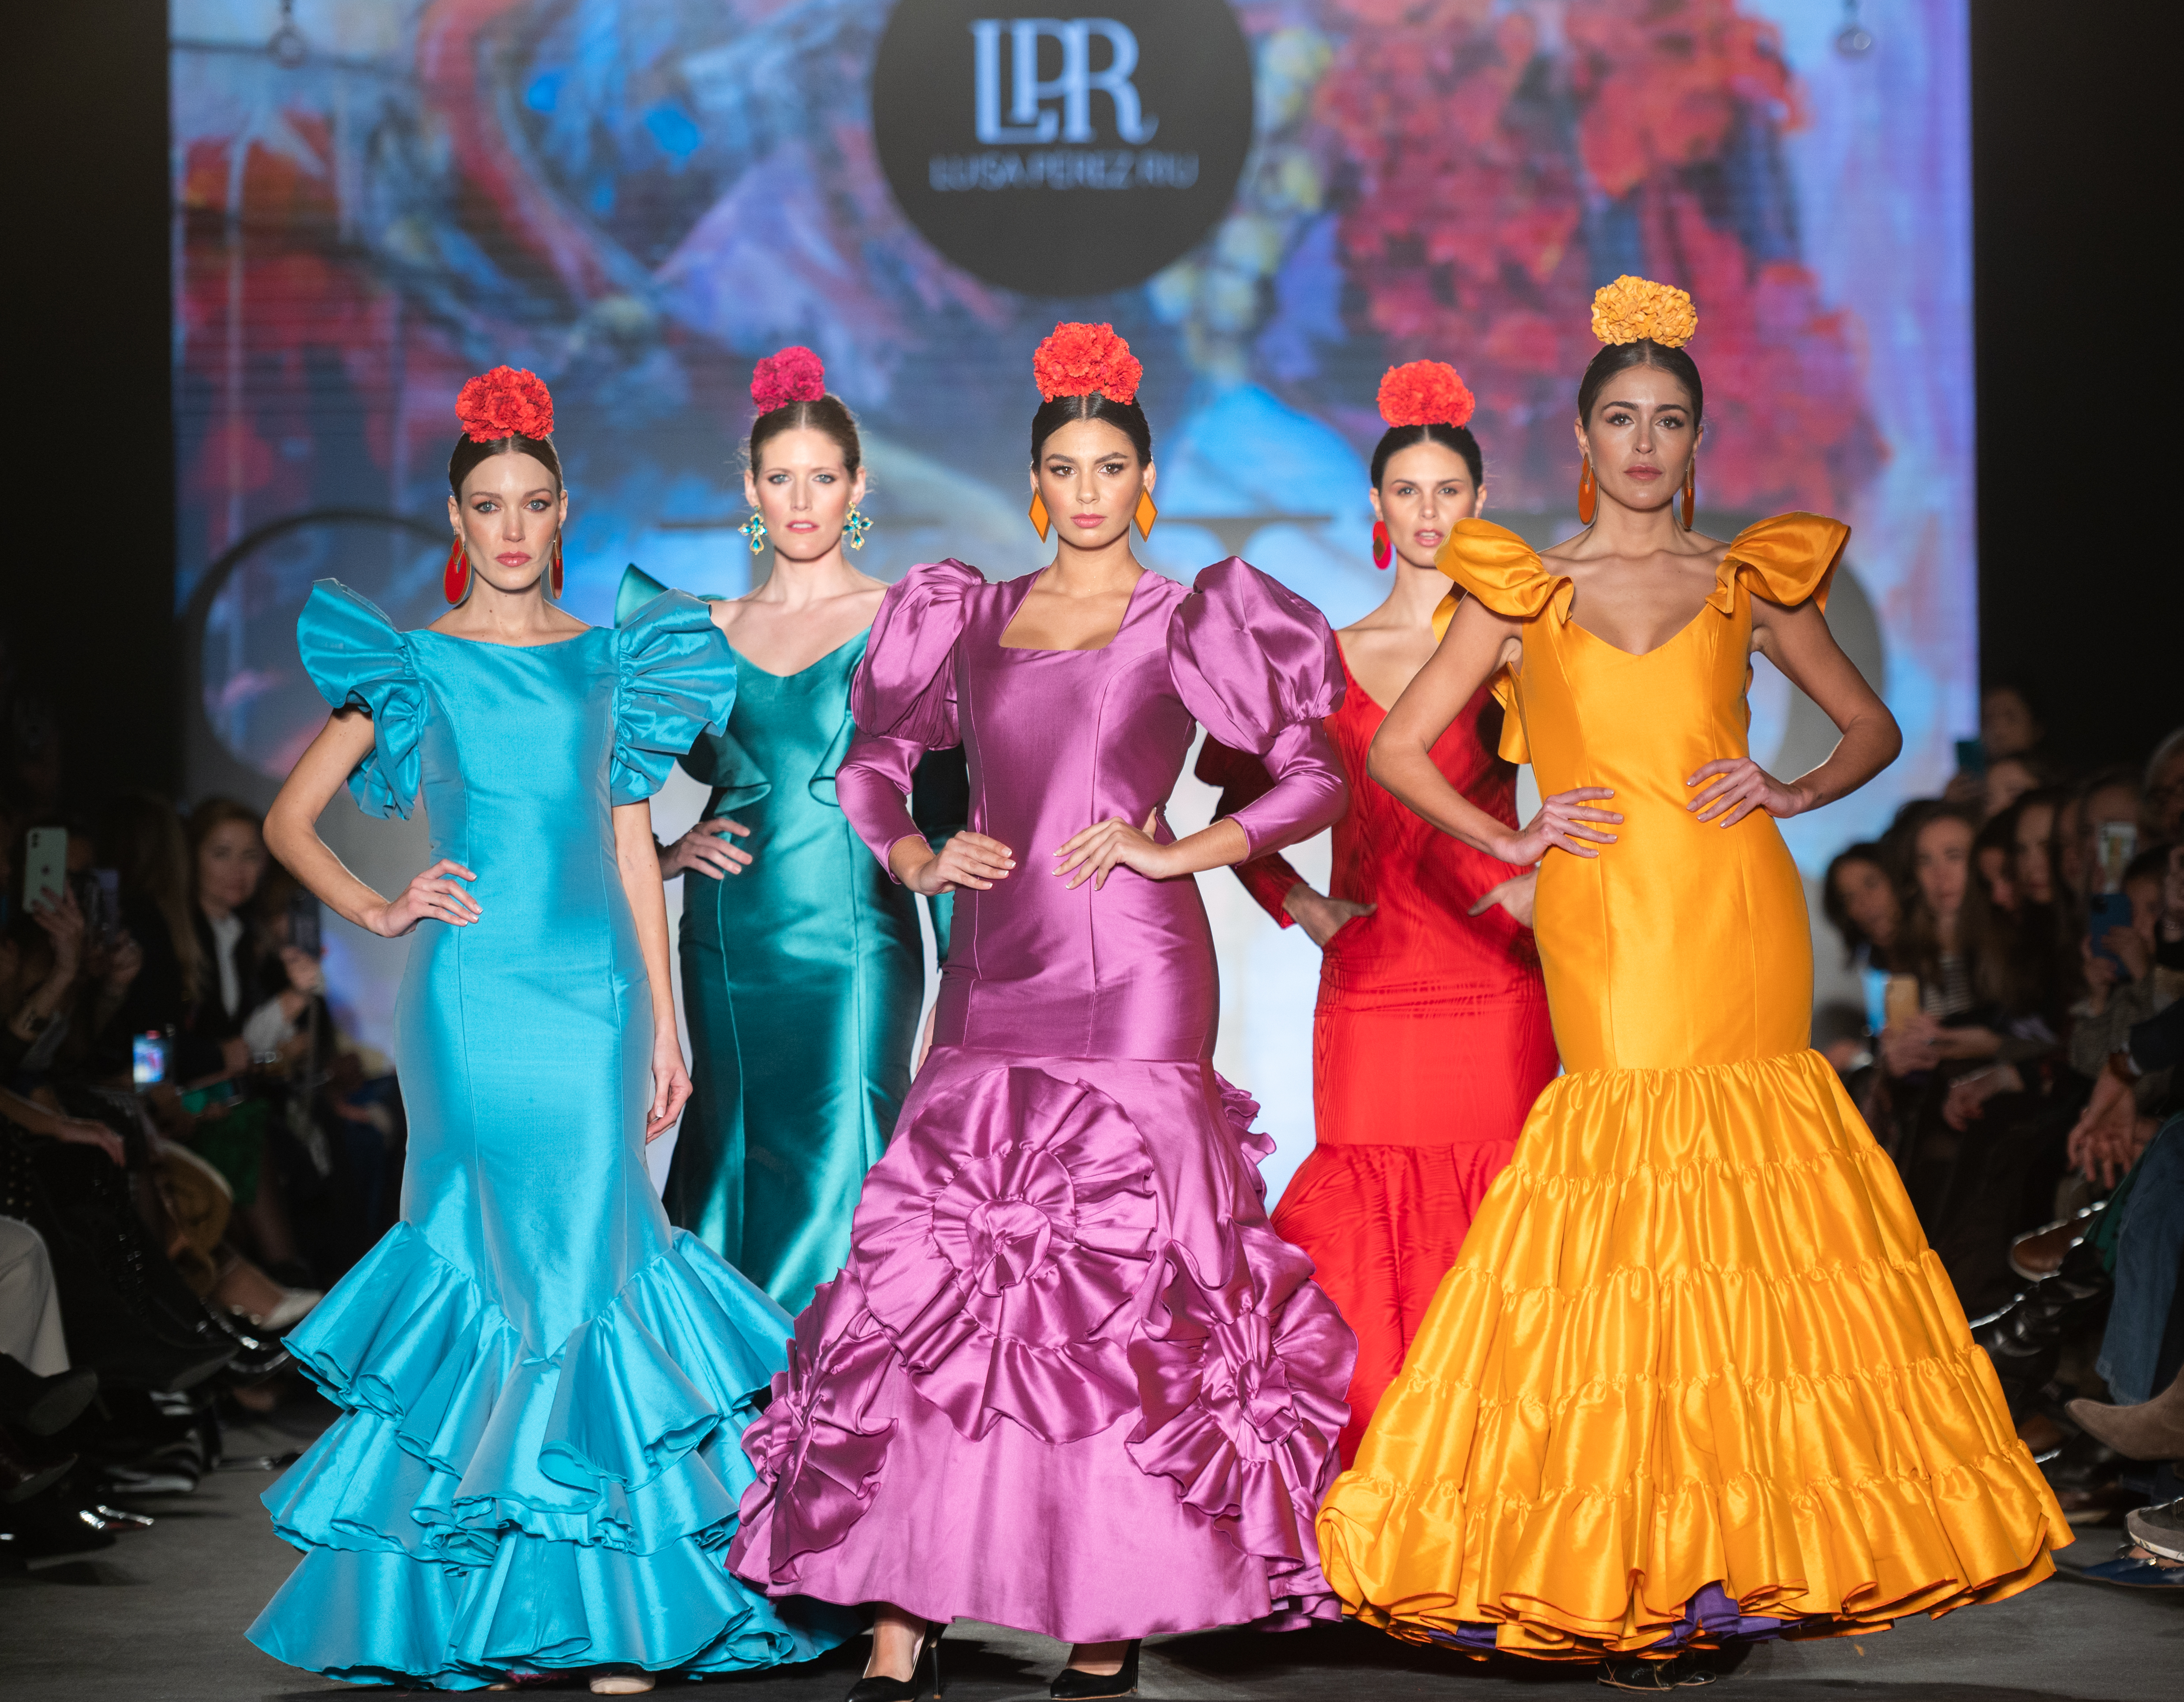 Las ganas de imponen en las dos pasarelas de moda flamenca de España | Estilo | EL PAÍS